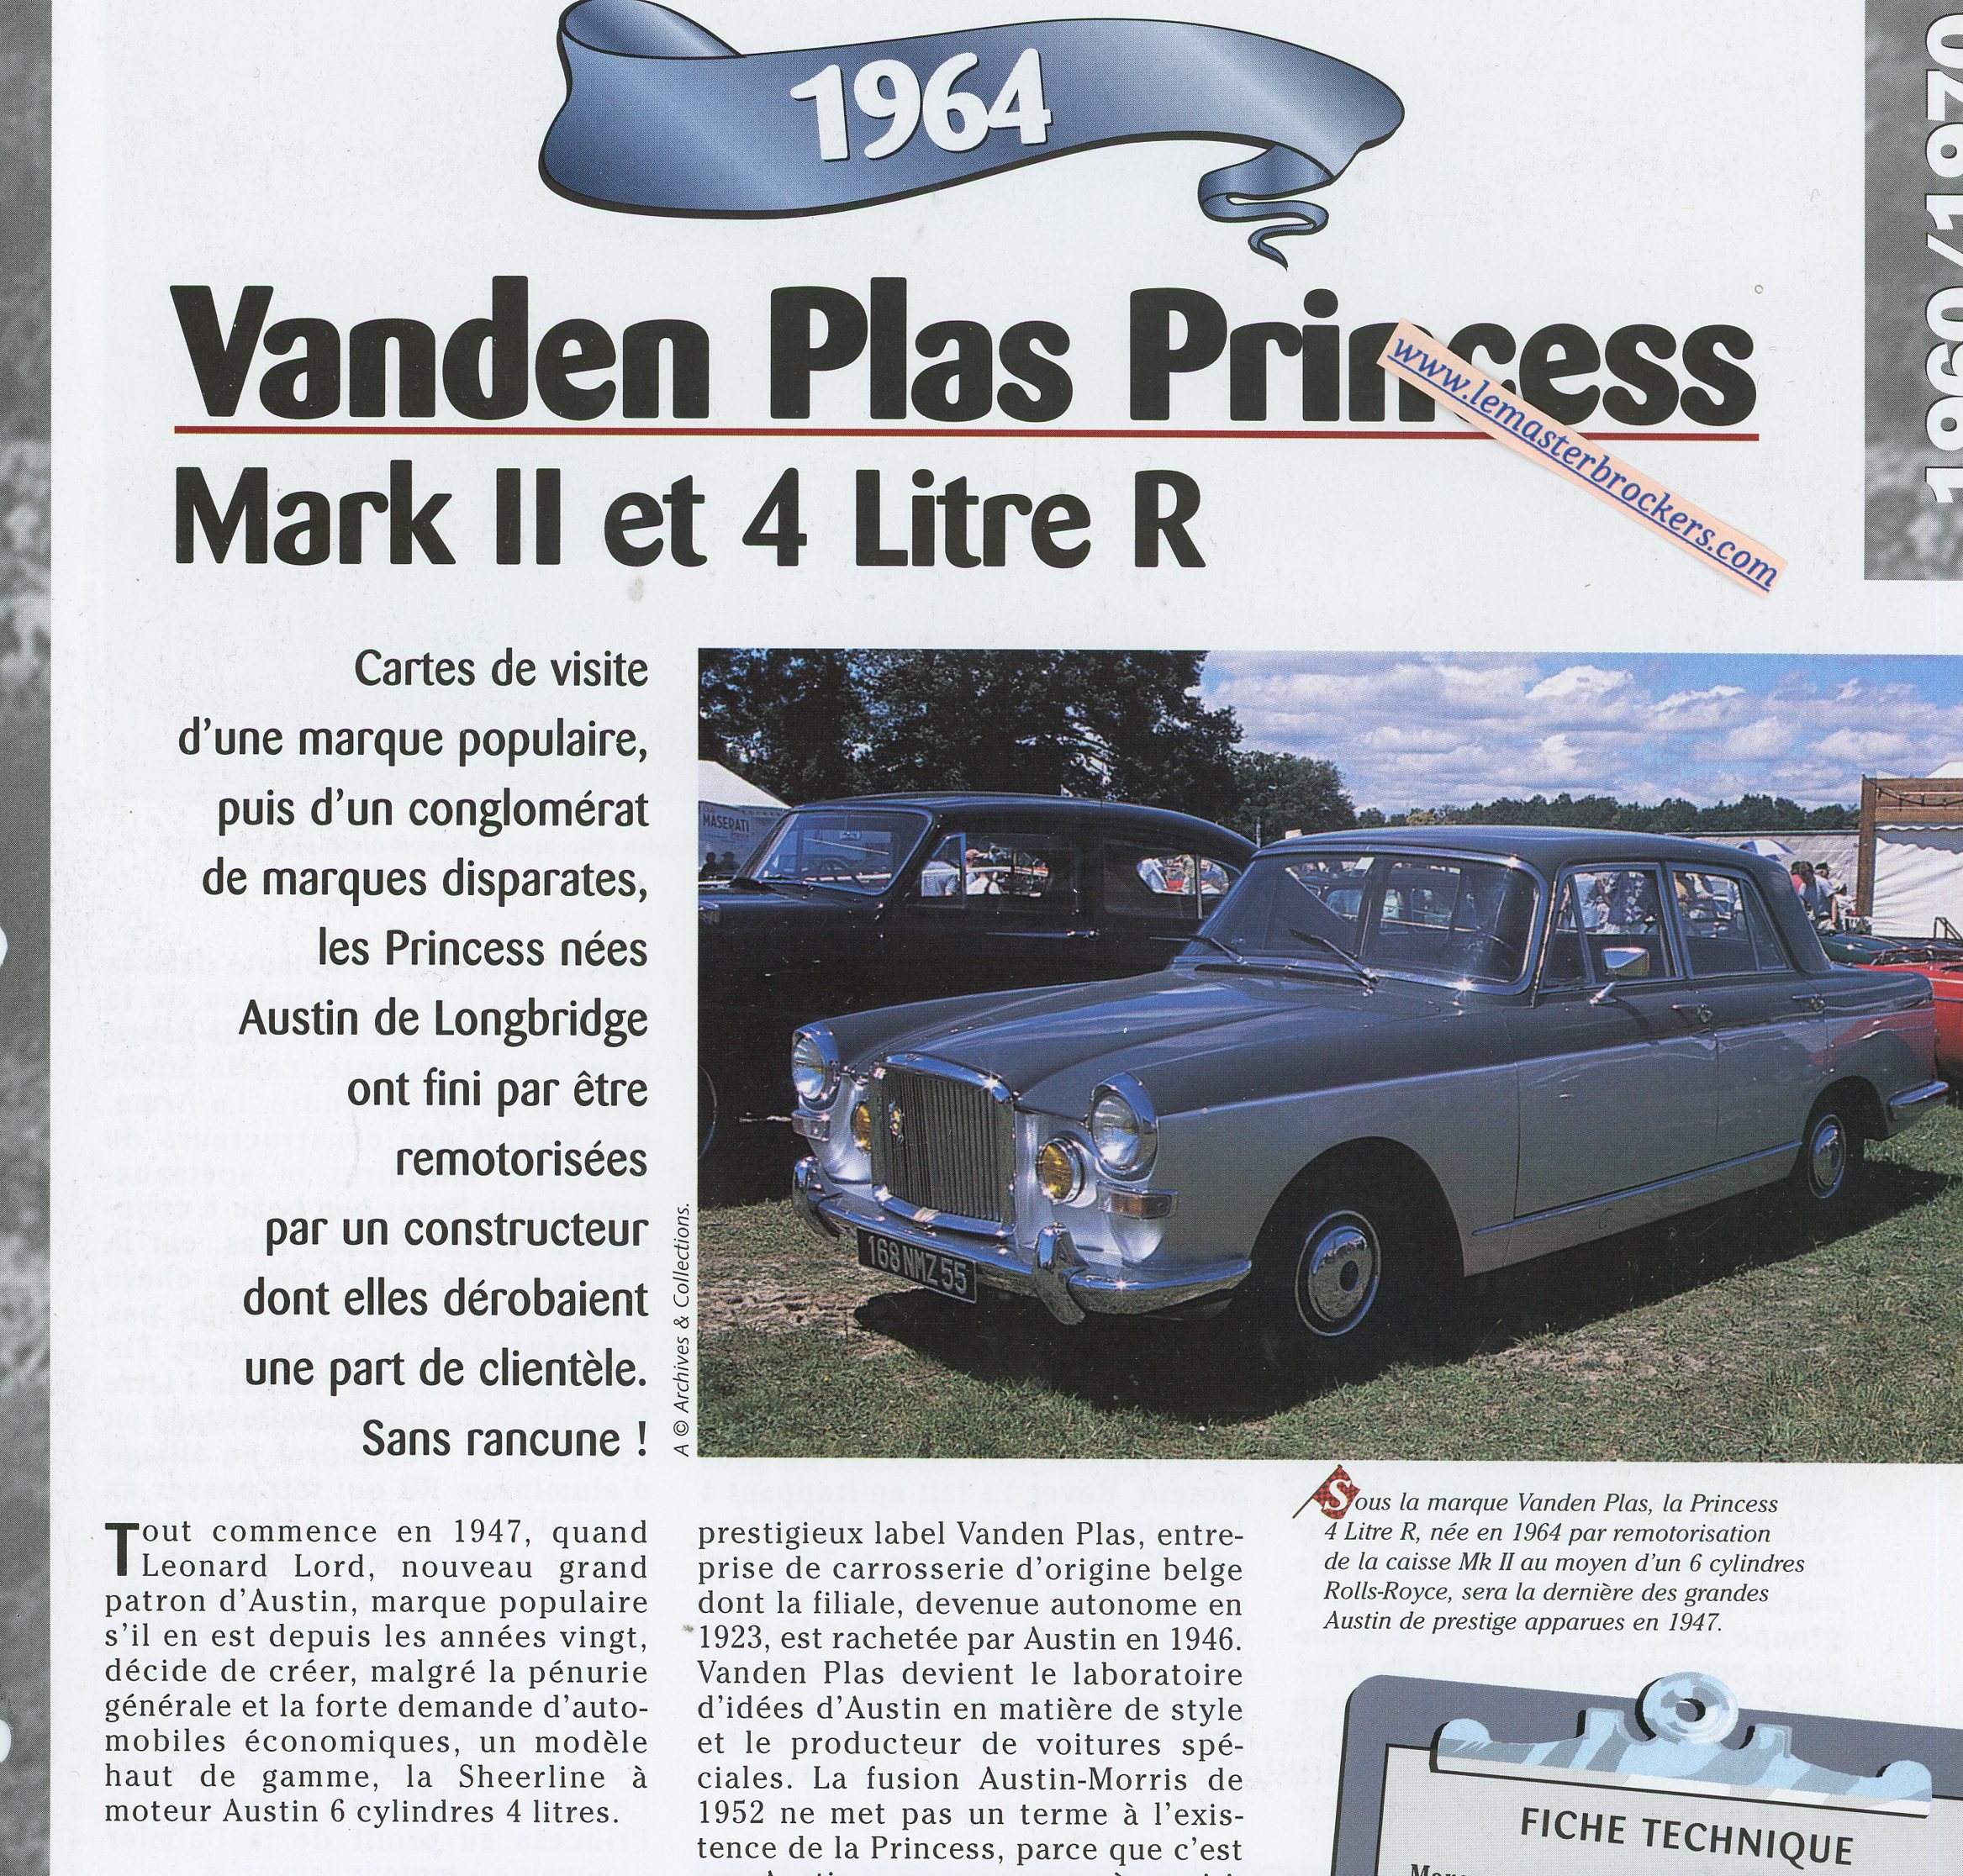 VANDEN-PLAS-PRINCESS-1964-FICHE-TECHNIQUE-VOITURE-LEMASTERBROCKERS